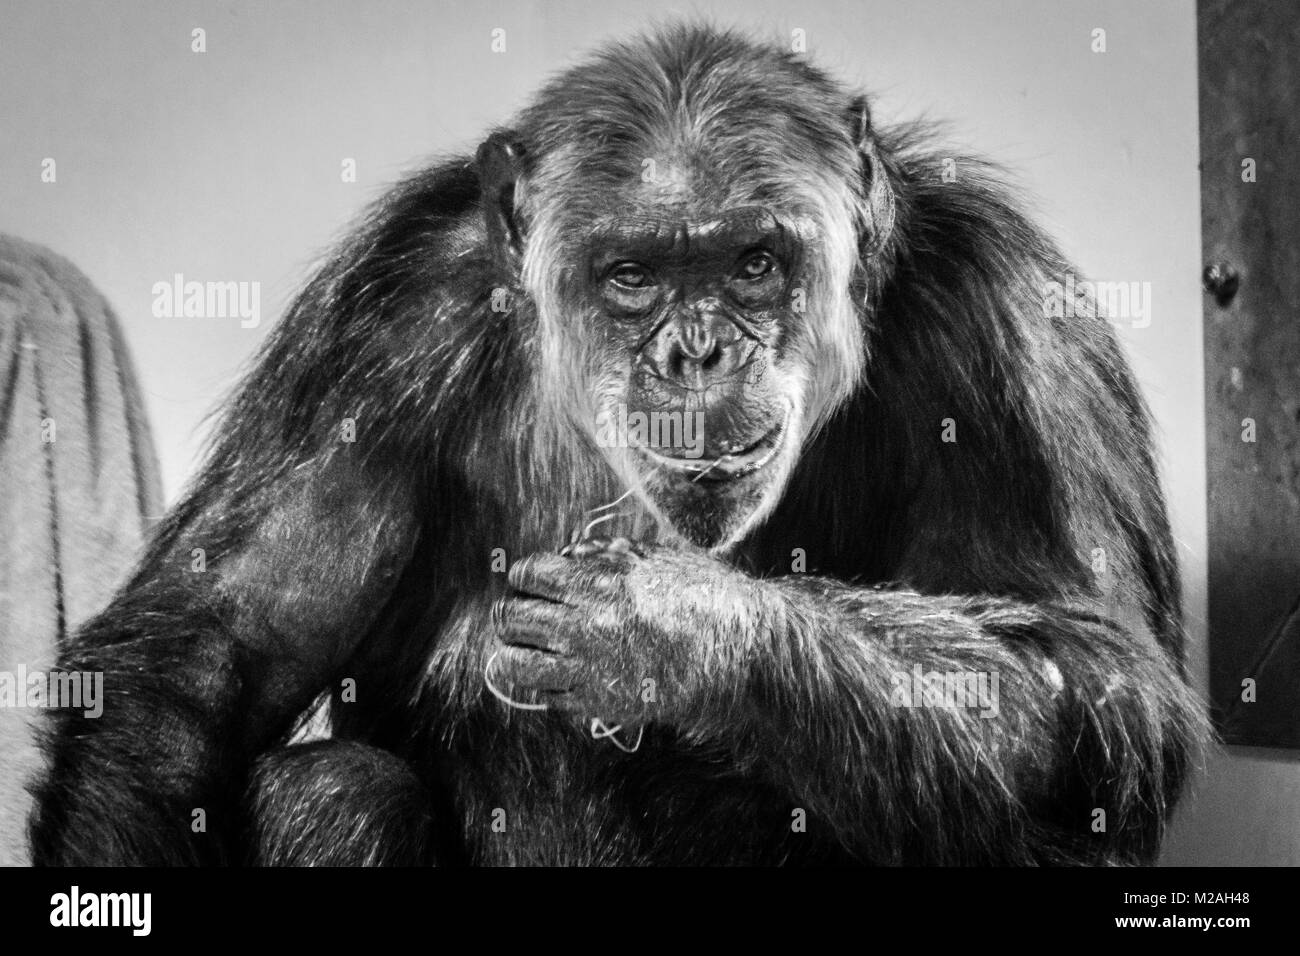 Uno scimpanzé fissando fotocamera, girato in bianco e nero Foto Stock